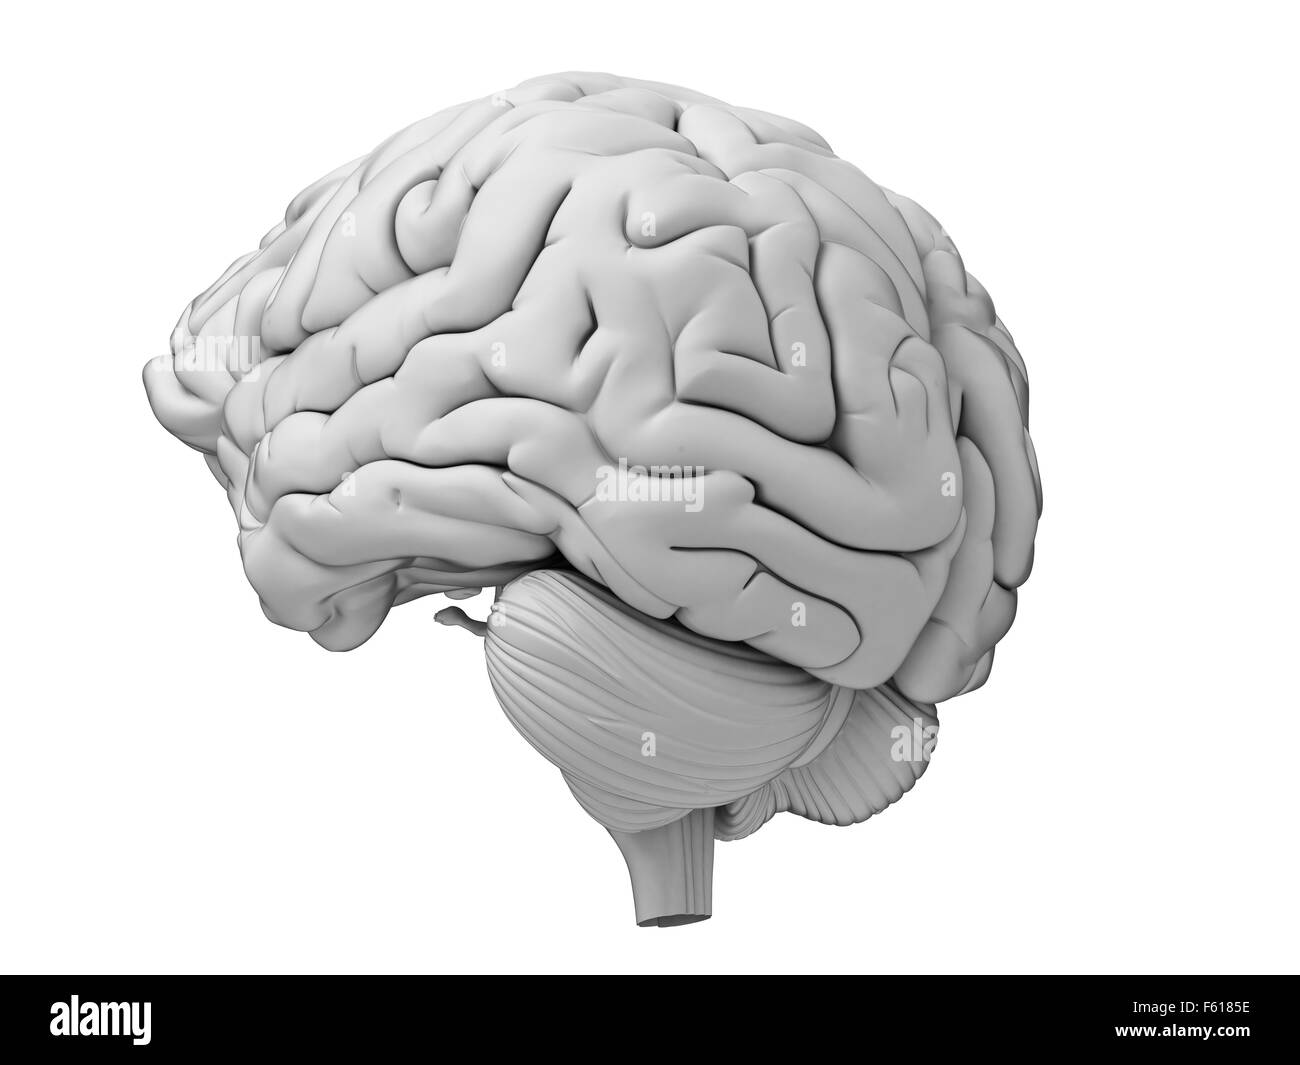 Dal punto di vista medico illustrazione accurata del cervello umano Foto Stock